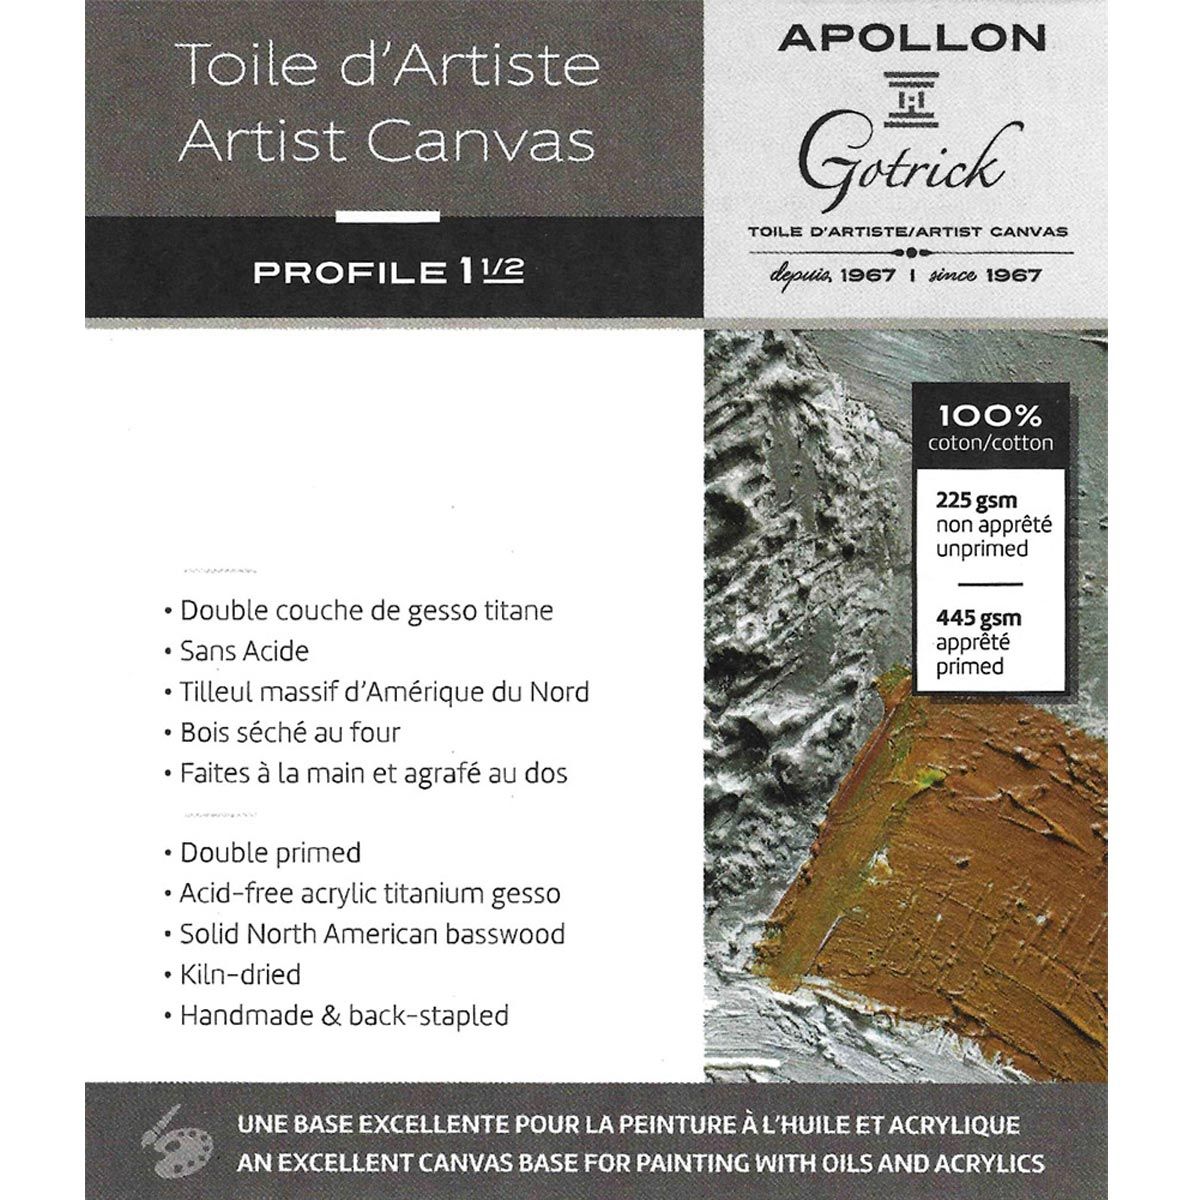 Apollon Gotrick Gallery Artist Canvas Profile 1½" - 12" x 12"